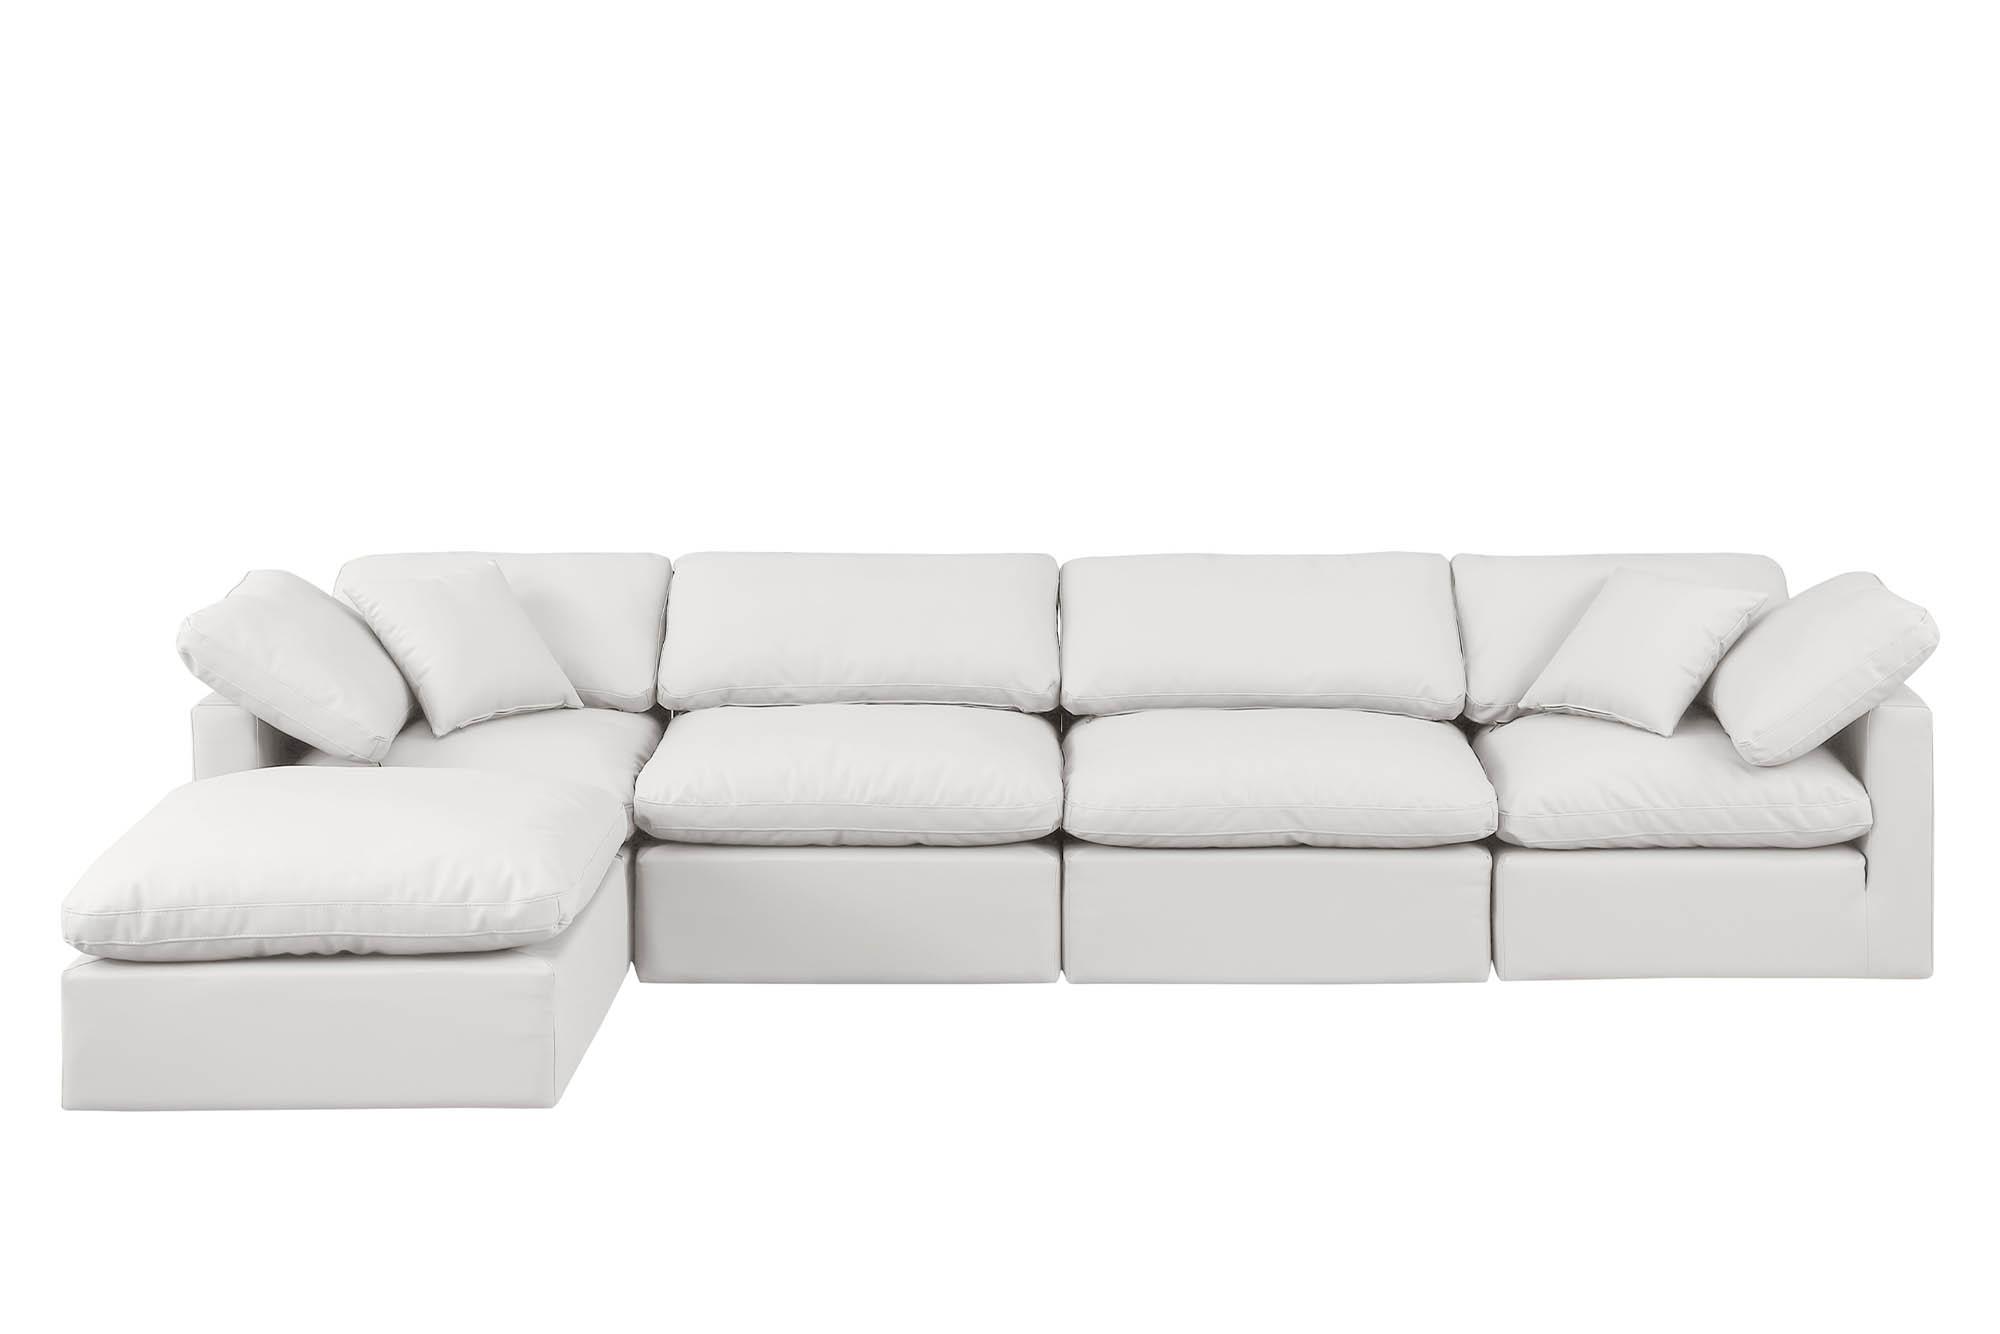 

    
Meridian Furniture INDULGE 146Cream-Sec5A Modular Sectional Sofa Cream 146Cream-Sec5A
